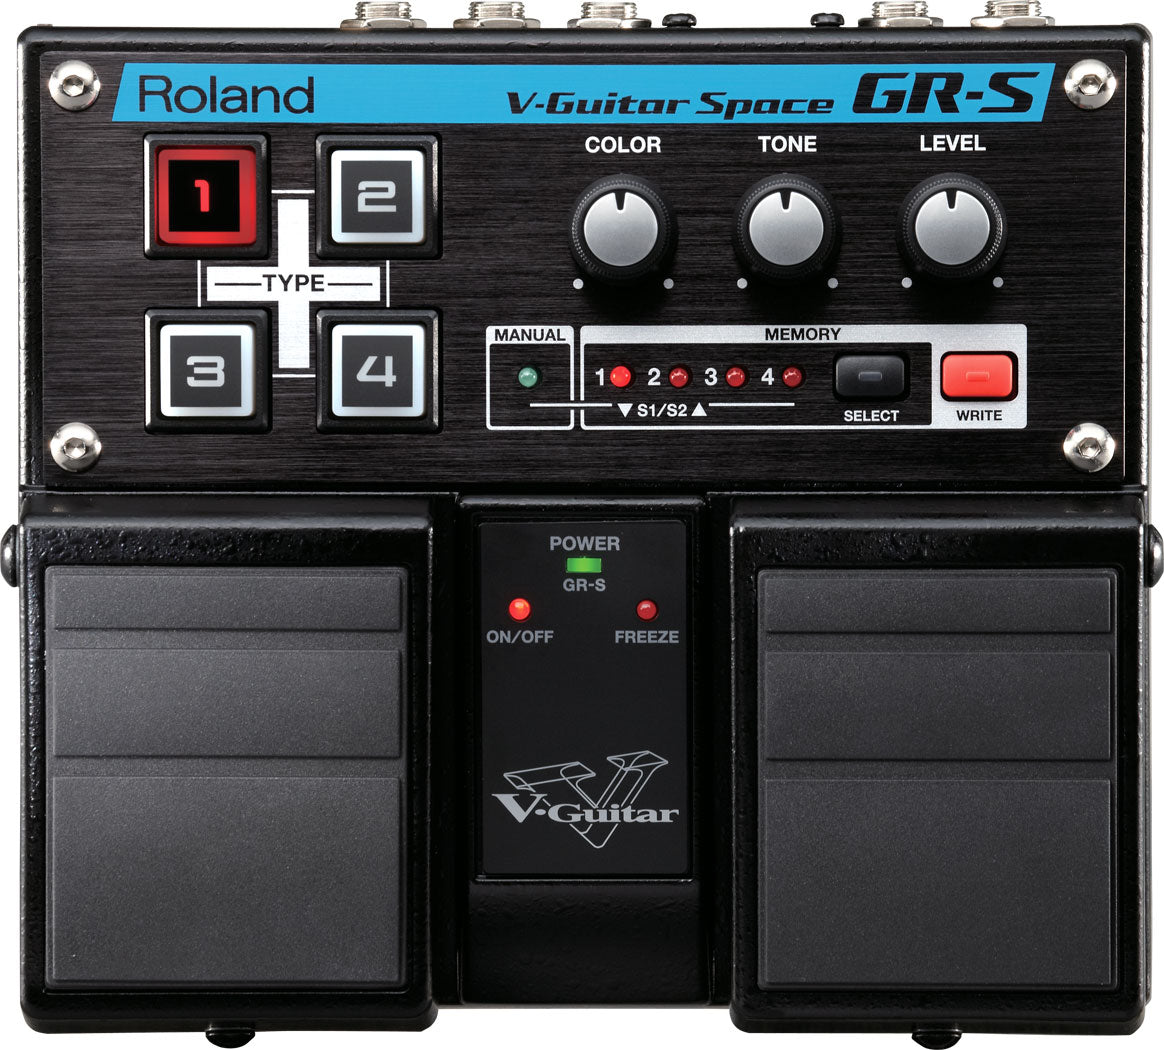 Roland GR-S V-Guitar Space 結他效果器